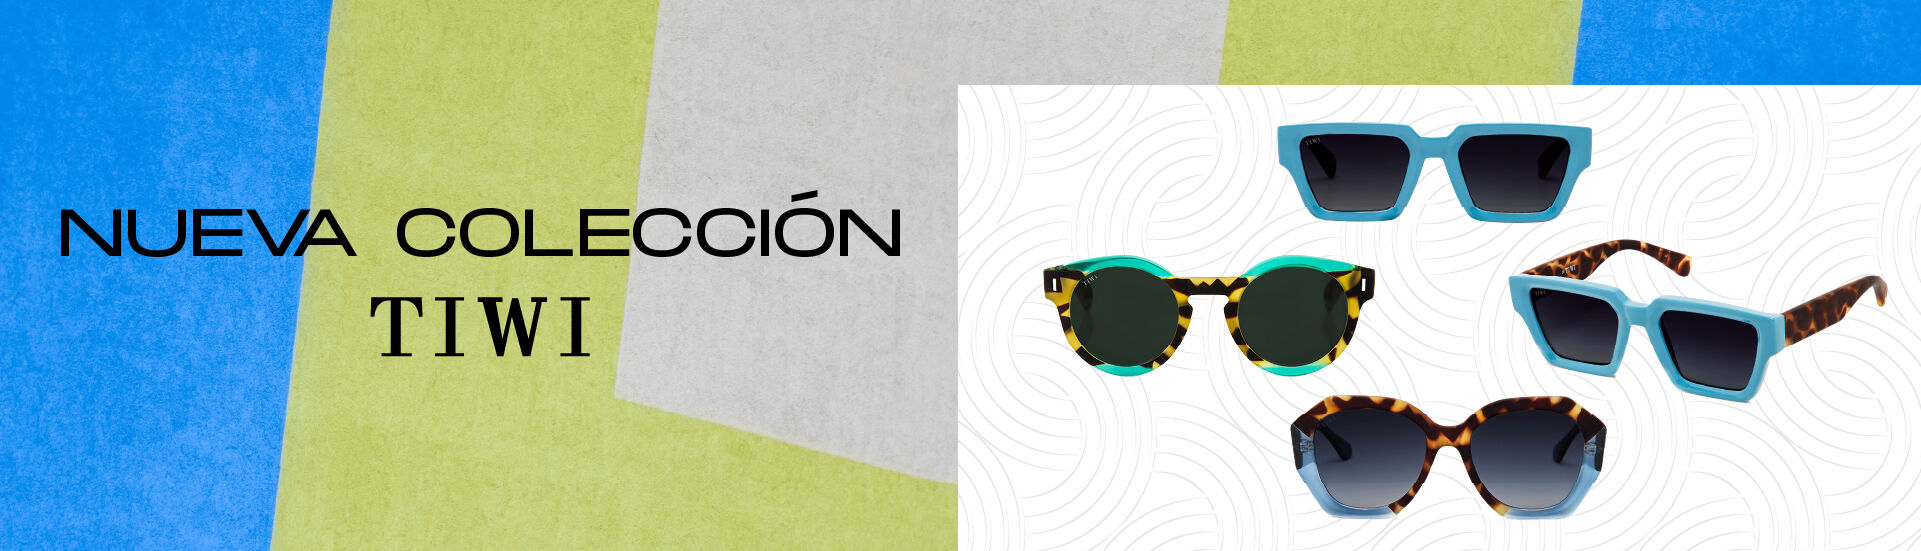 VisionLab! Gafas gafas de sol, lentillas y audio